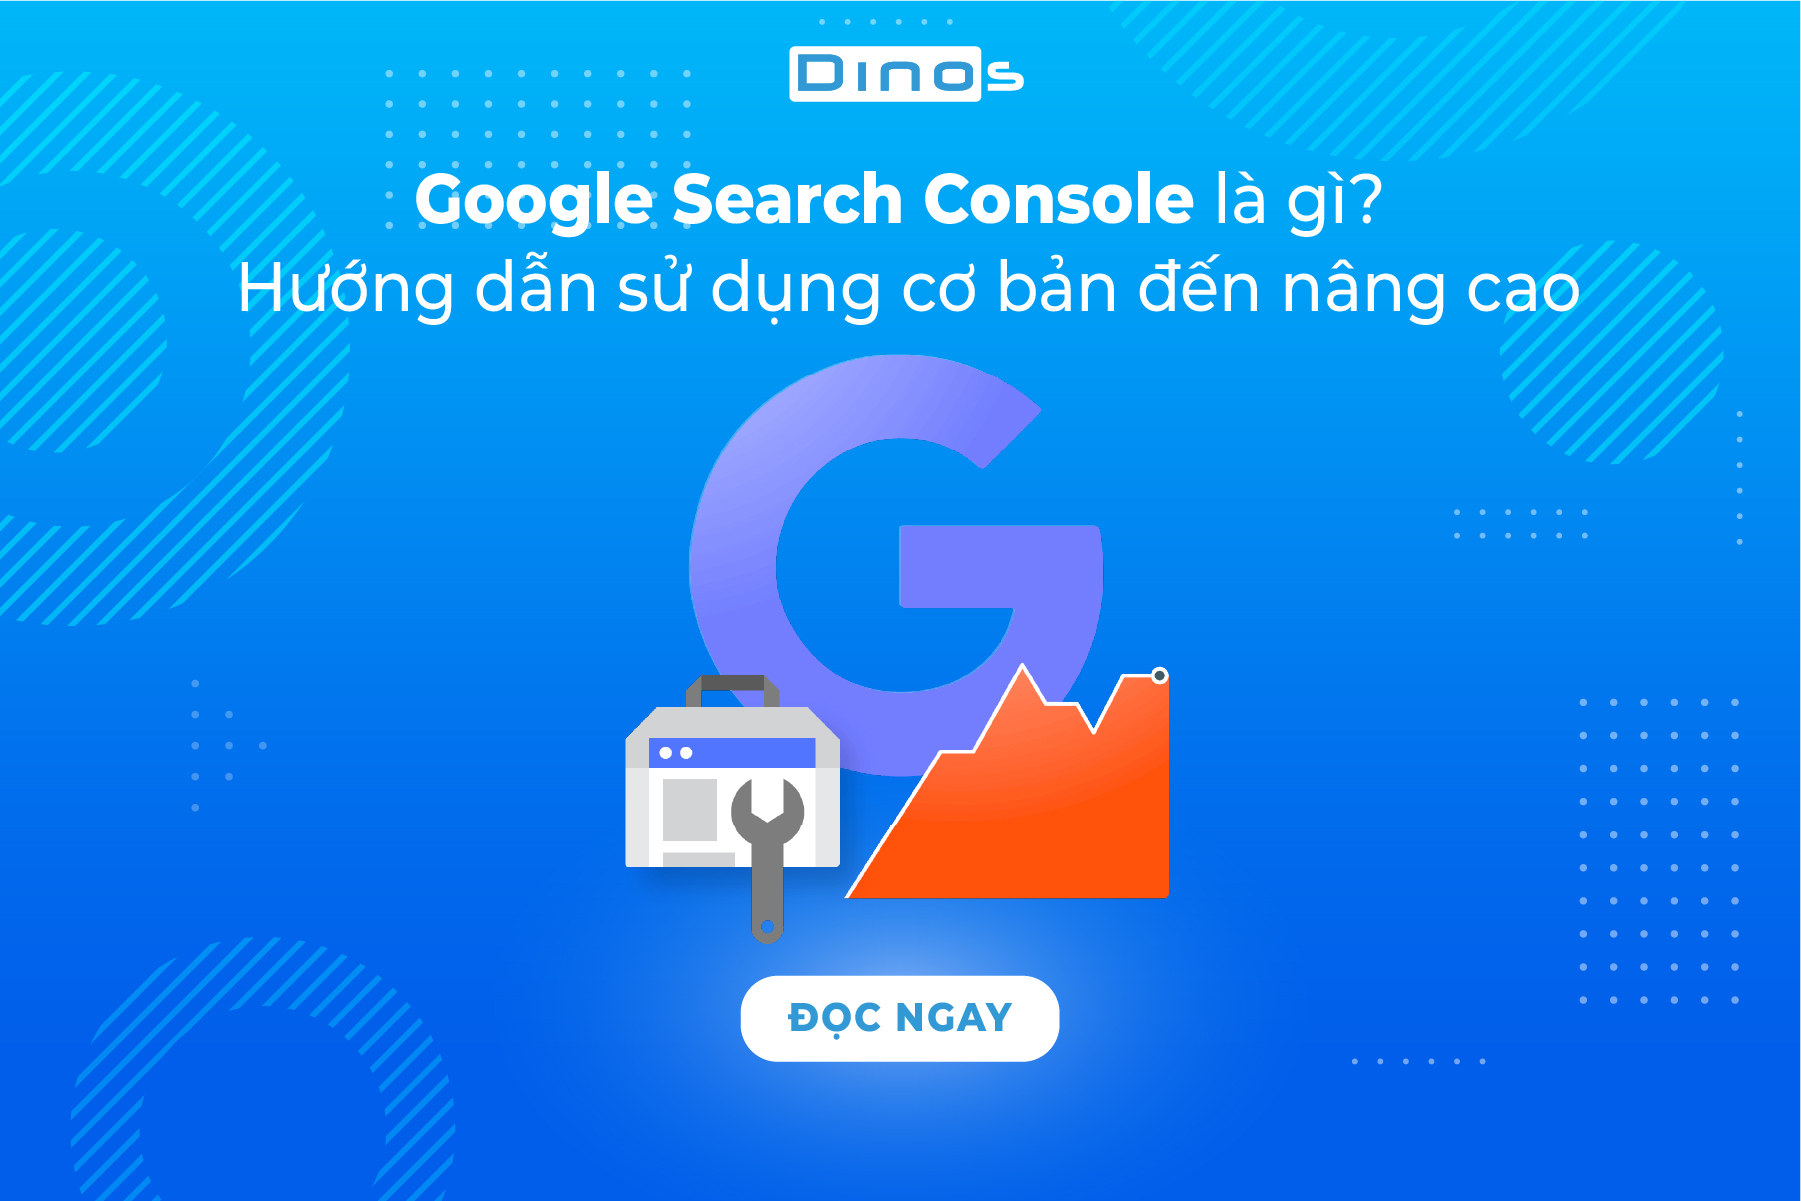 Google Search Console là gì? Hướng dẫn sử dụng từ cơ bản đến nâng cao